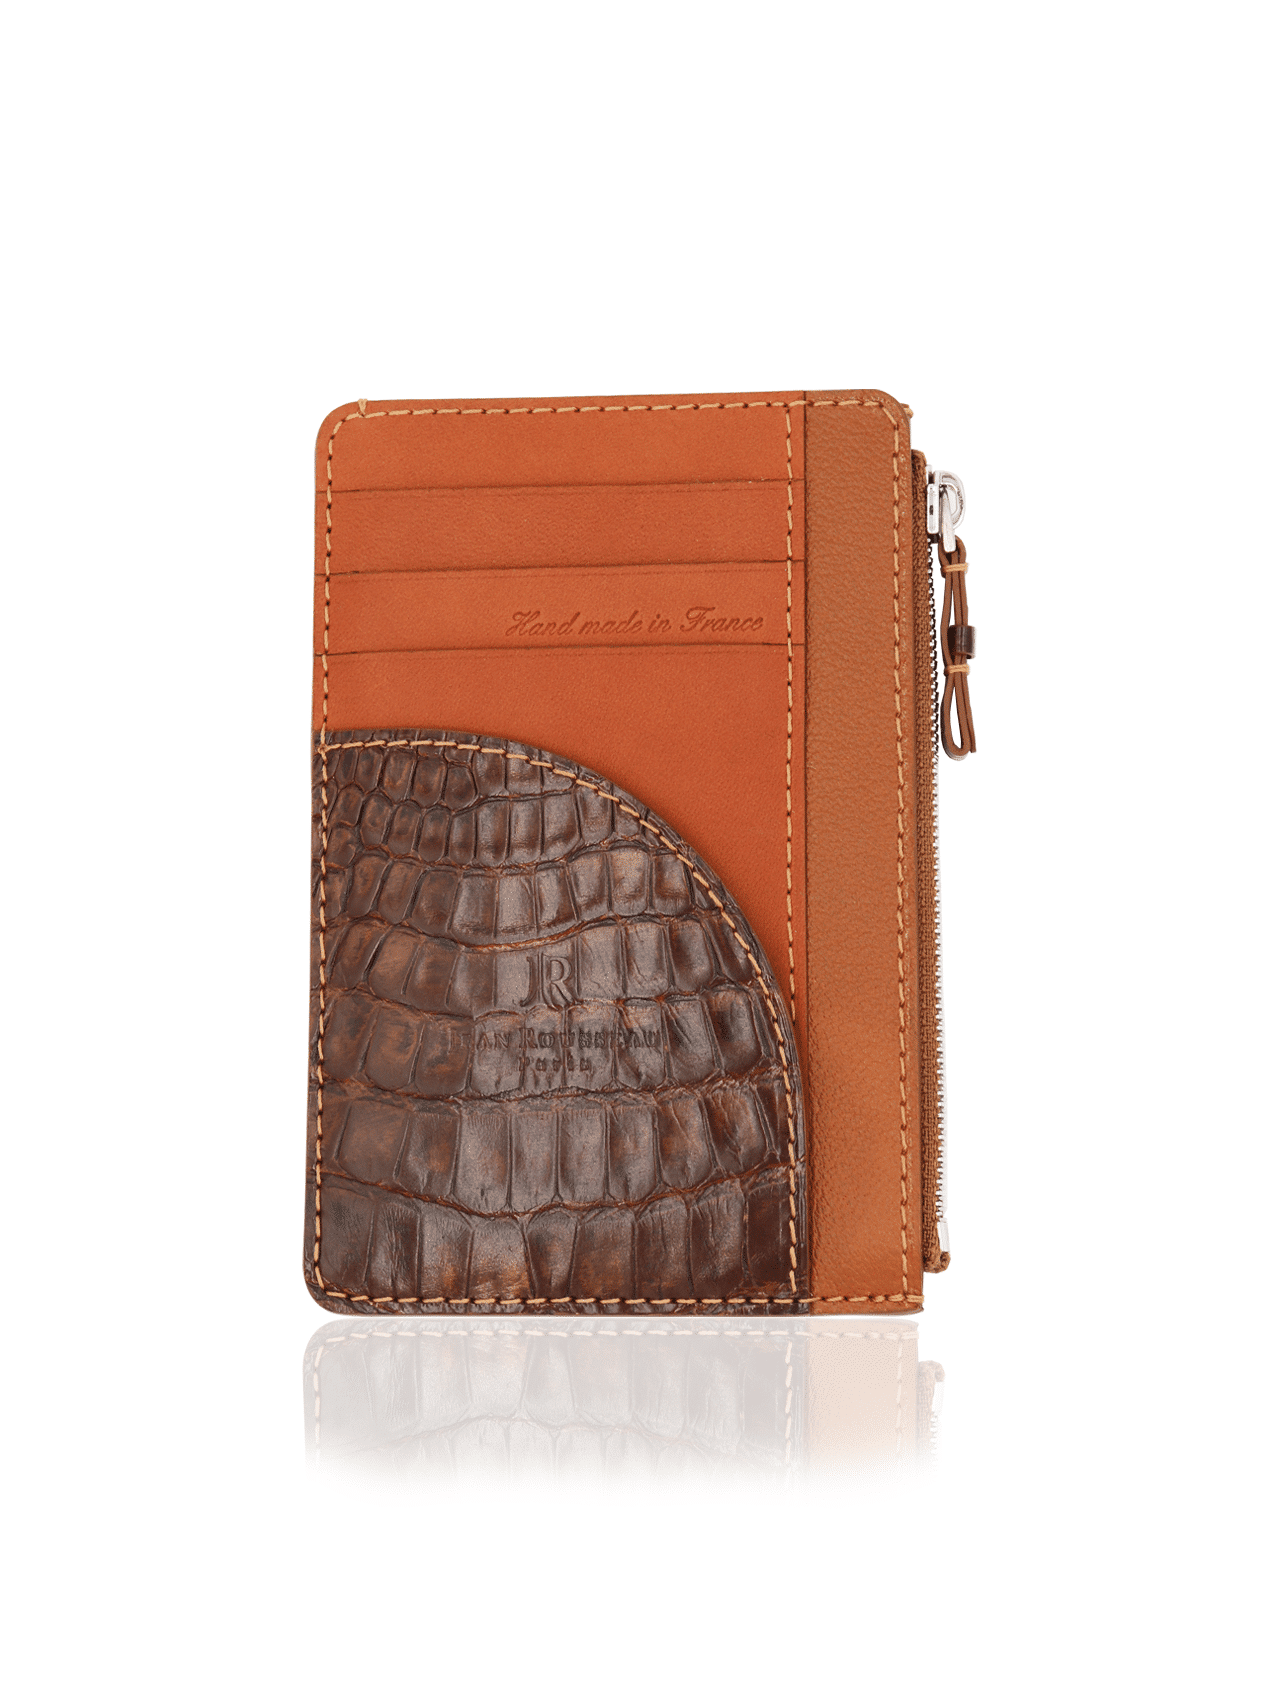 wallet zip zippy crocodile orange brown